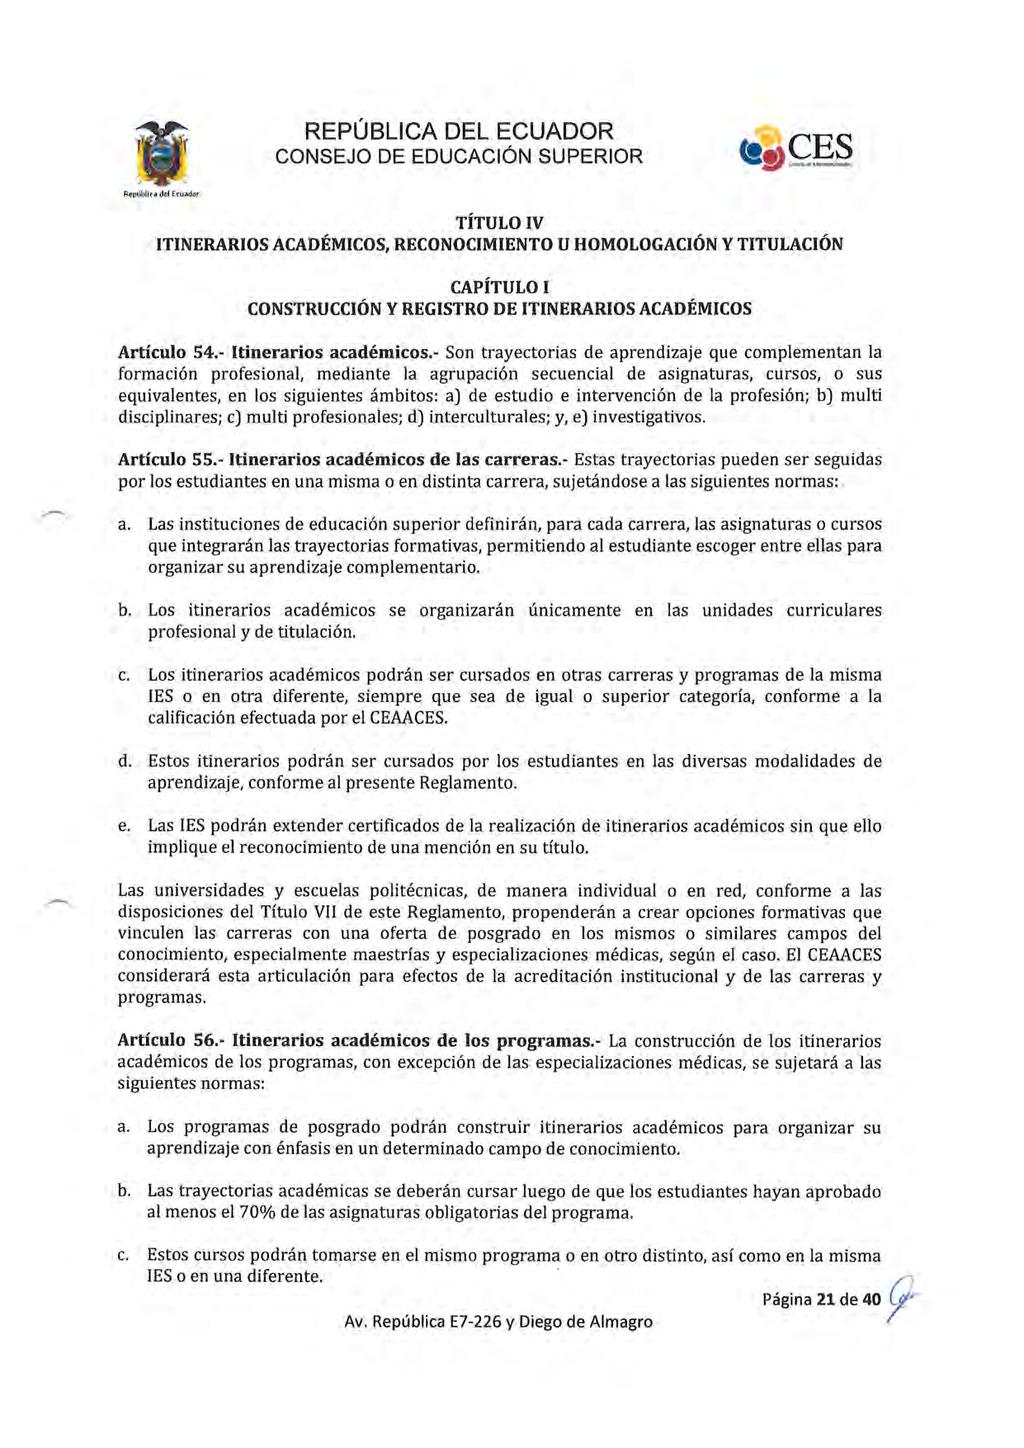 República del Ecuador TÍTULO IV ITINERARIOS ACADÉMICOS, RECONOCIMIENTO U HOMOLOGACIÓN Y TITULACIÓN CAPÍTULO I CONSTRUCCIÓN Y REGISTRO DE ITINERARIOS ACADÉMICOS Artículo 54.- Itinerarios académicos.